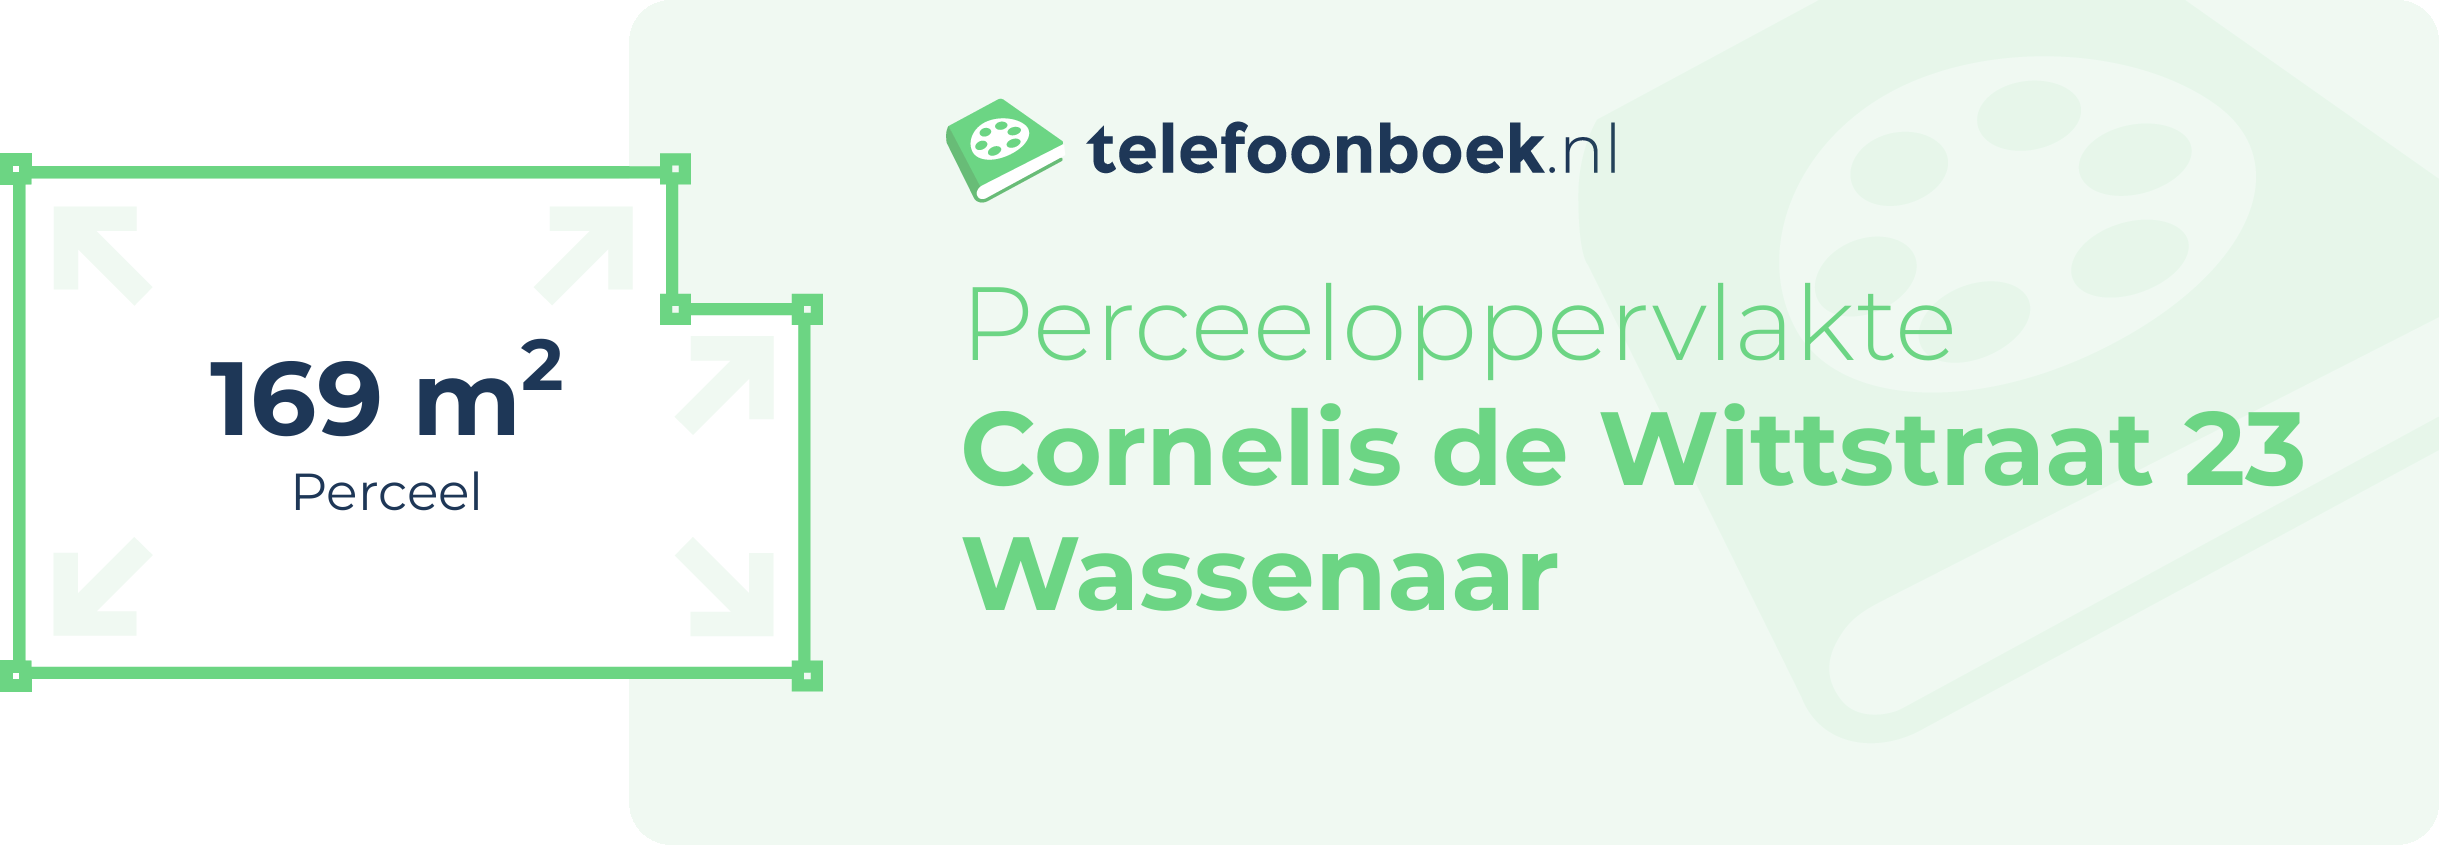 Perceeloppervlakte Cornelis De Wittstraat 23 Wassenaar